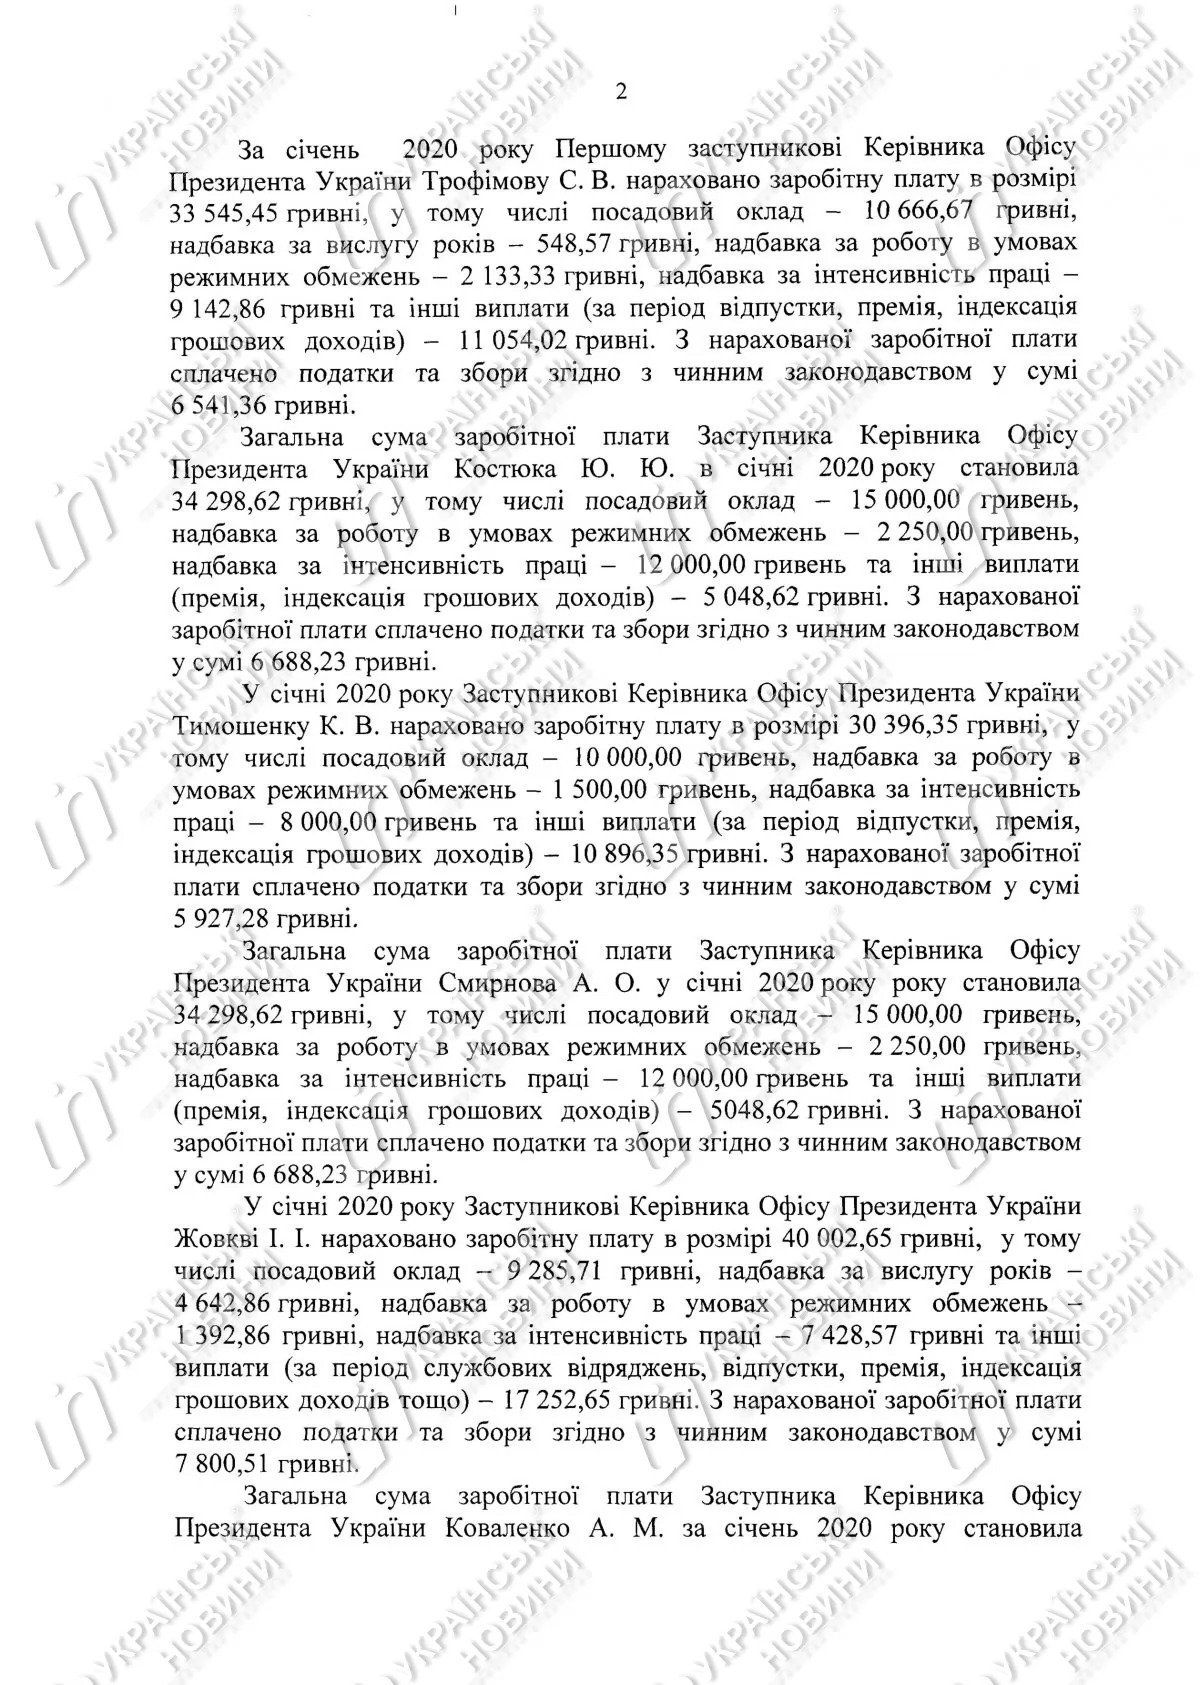 Зарплата пресс-секретаря президента Украины Юлии Мендель по итогам января 2020 года составила 52,5 тыс. гривен